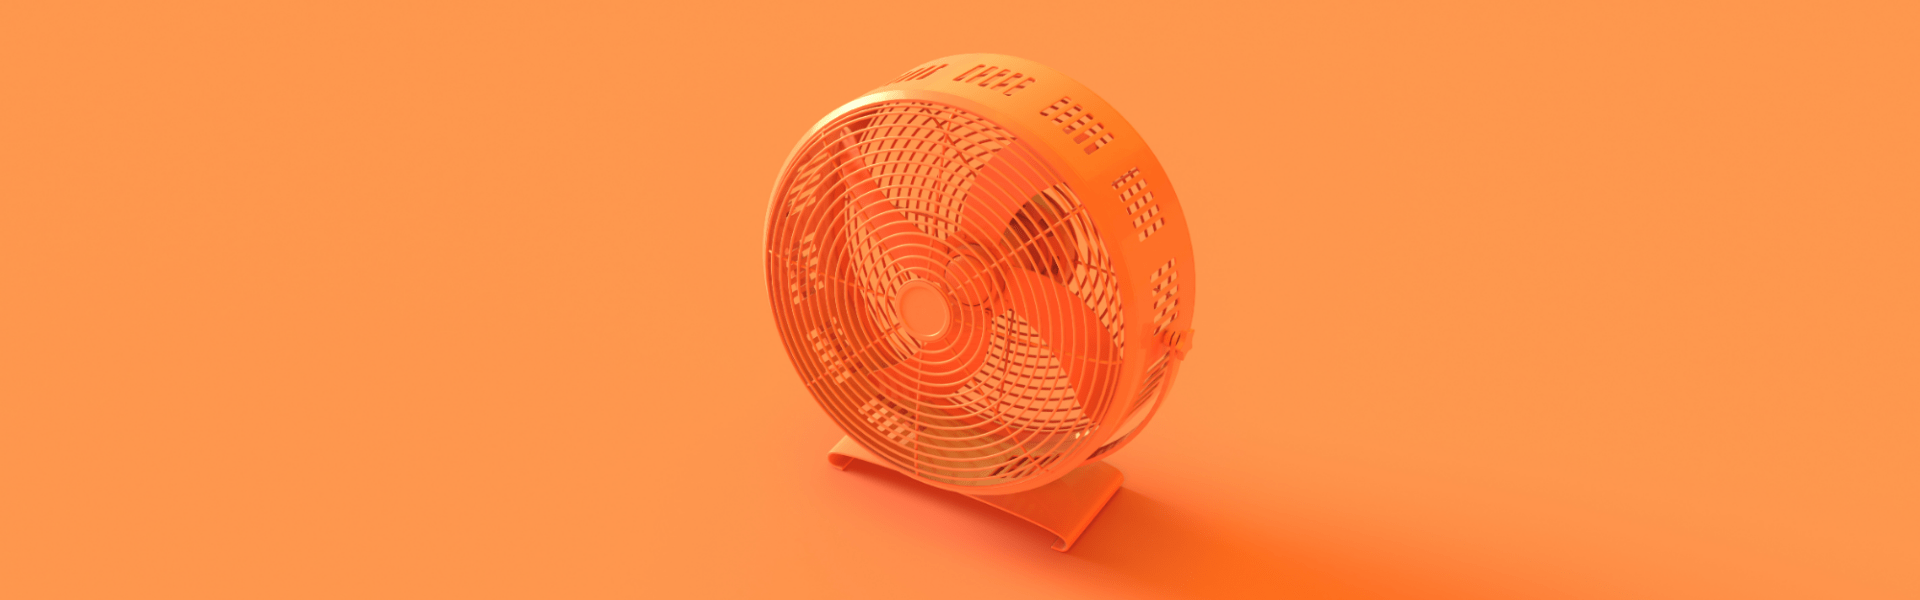 Oranje ventilator